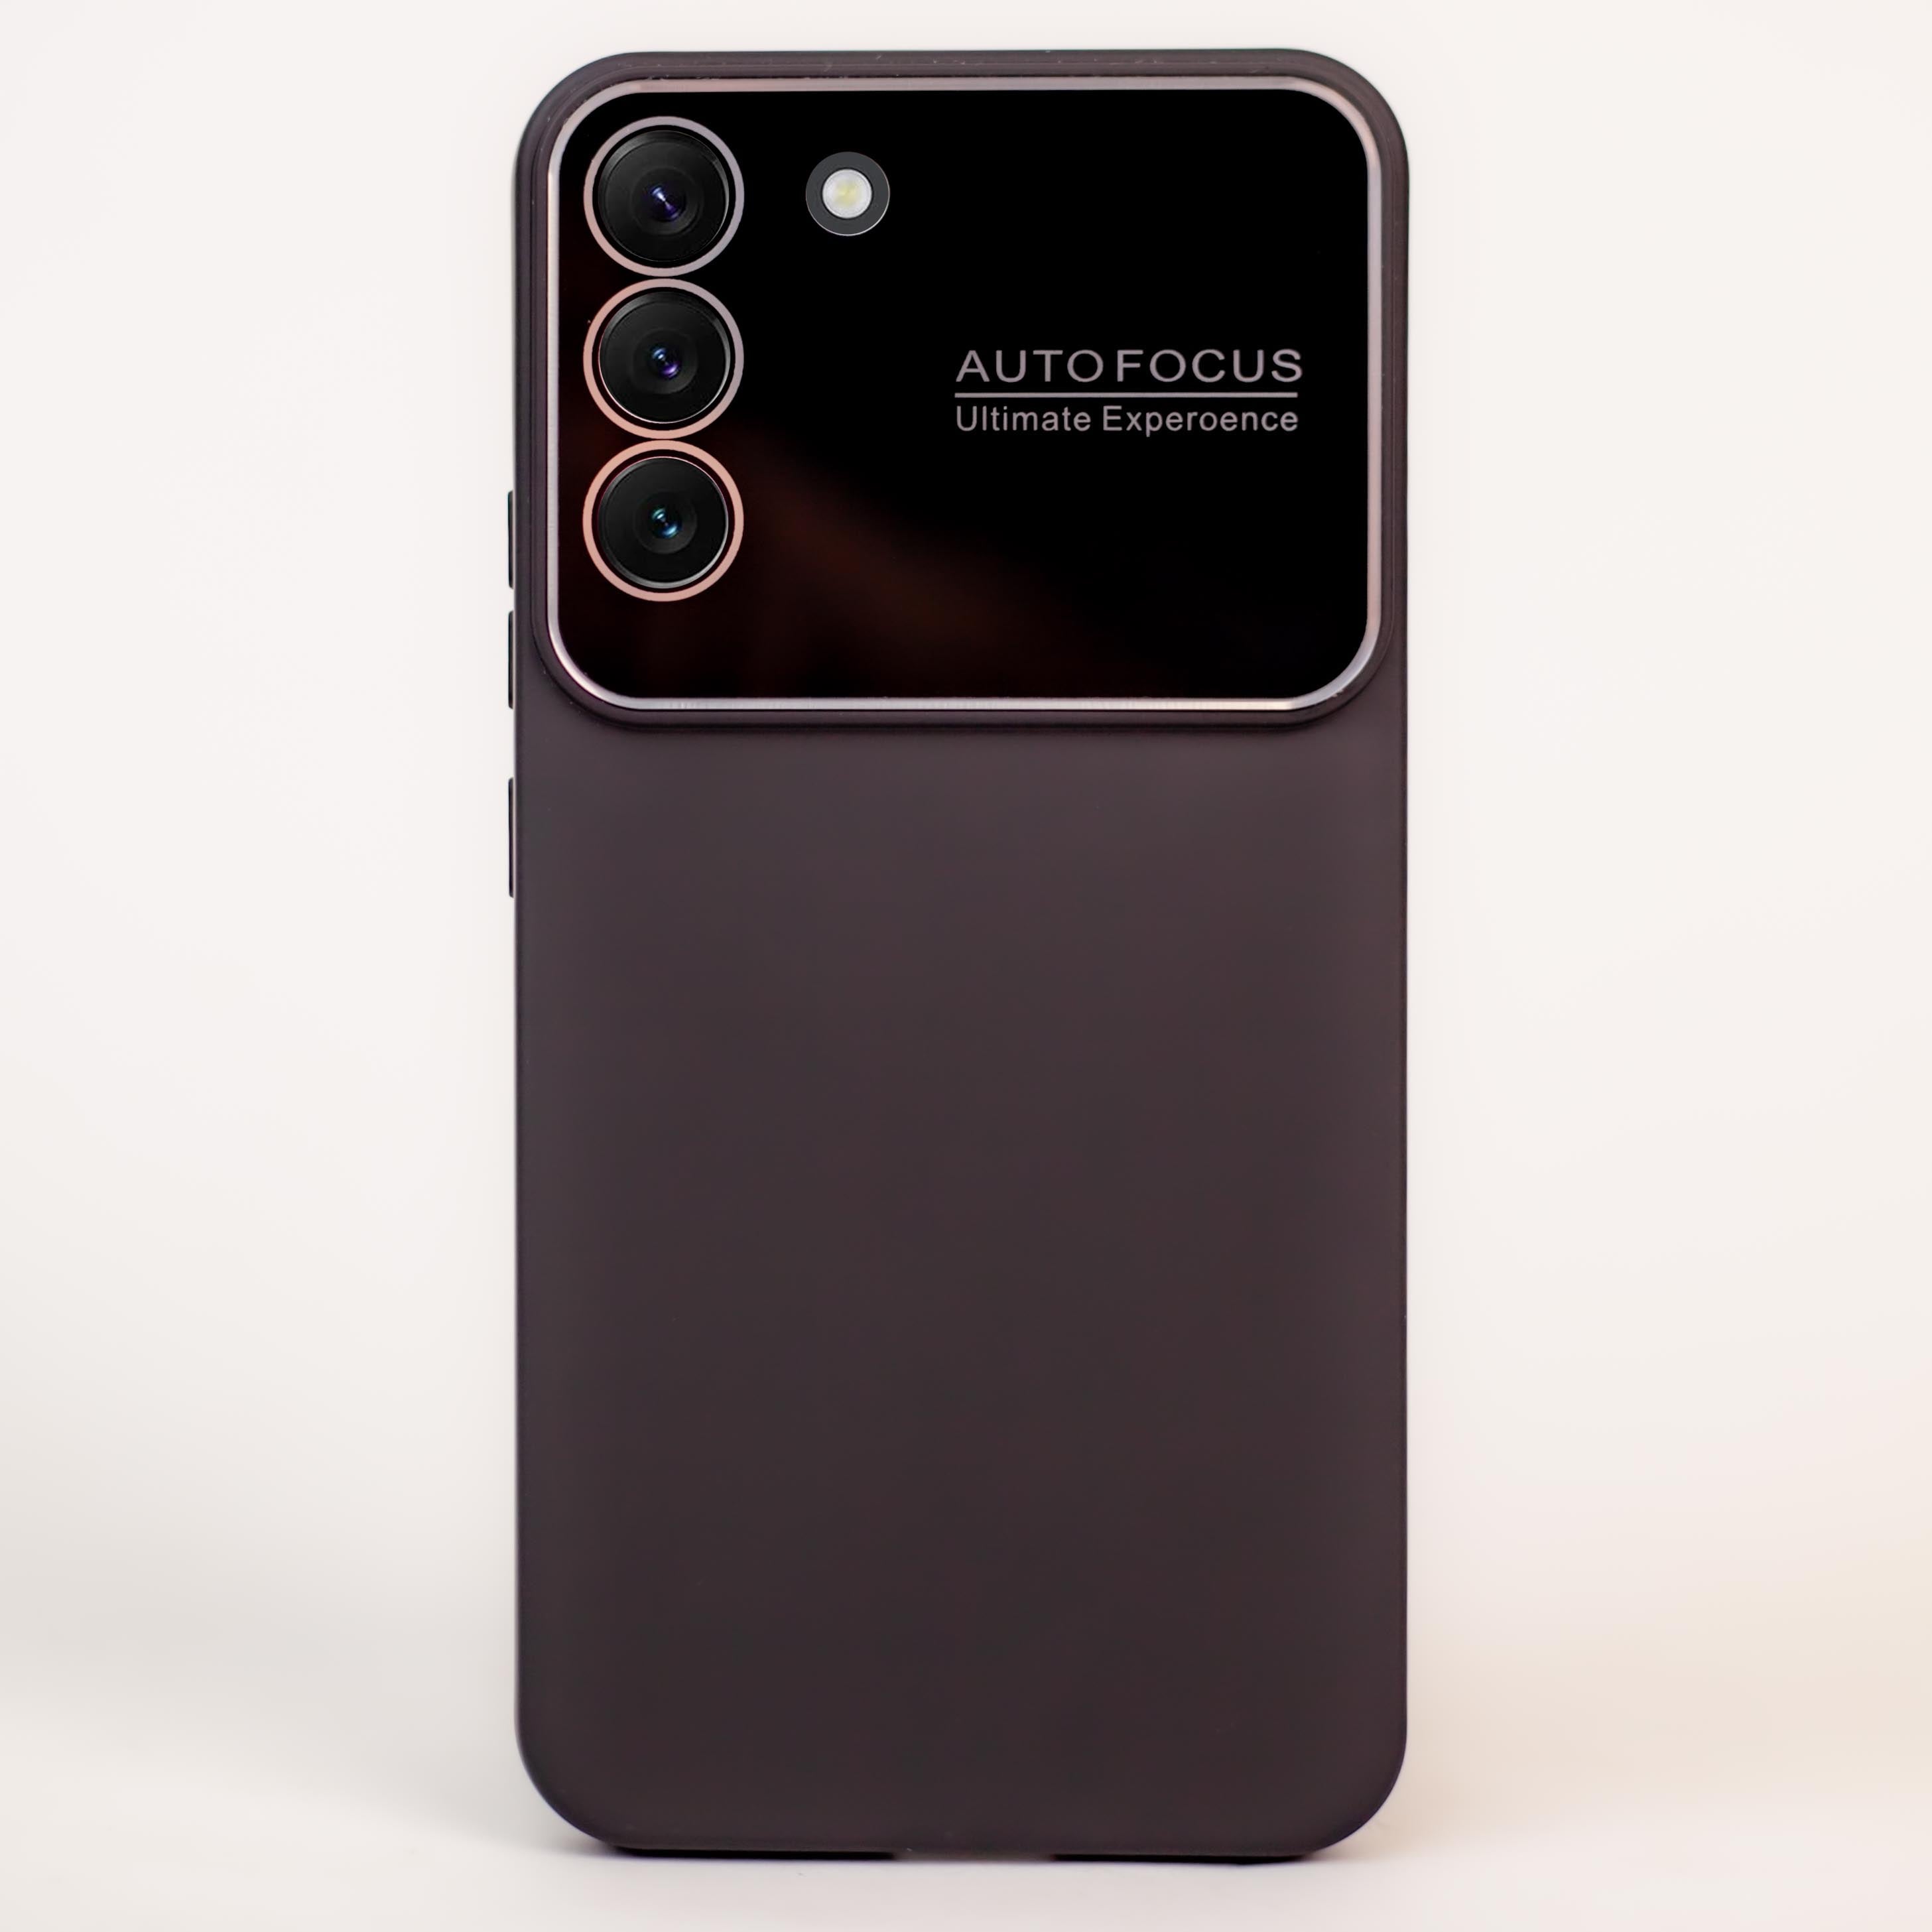 جراب Autofocus بحماية لعدسة الكاميرا وهي تقنية تسمي التركيز التلقائي الفوري لسامسونج Samsung S22 Plus